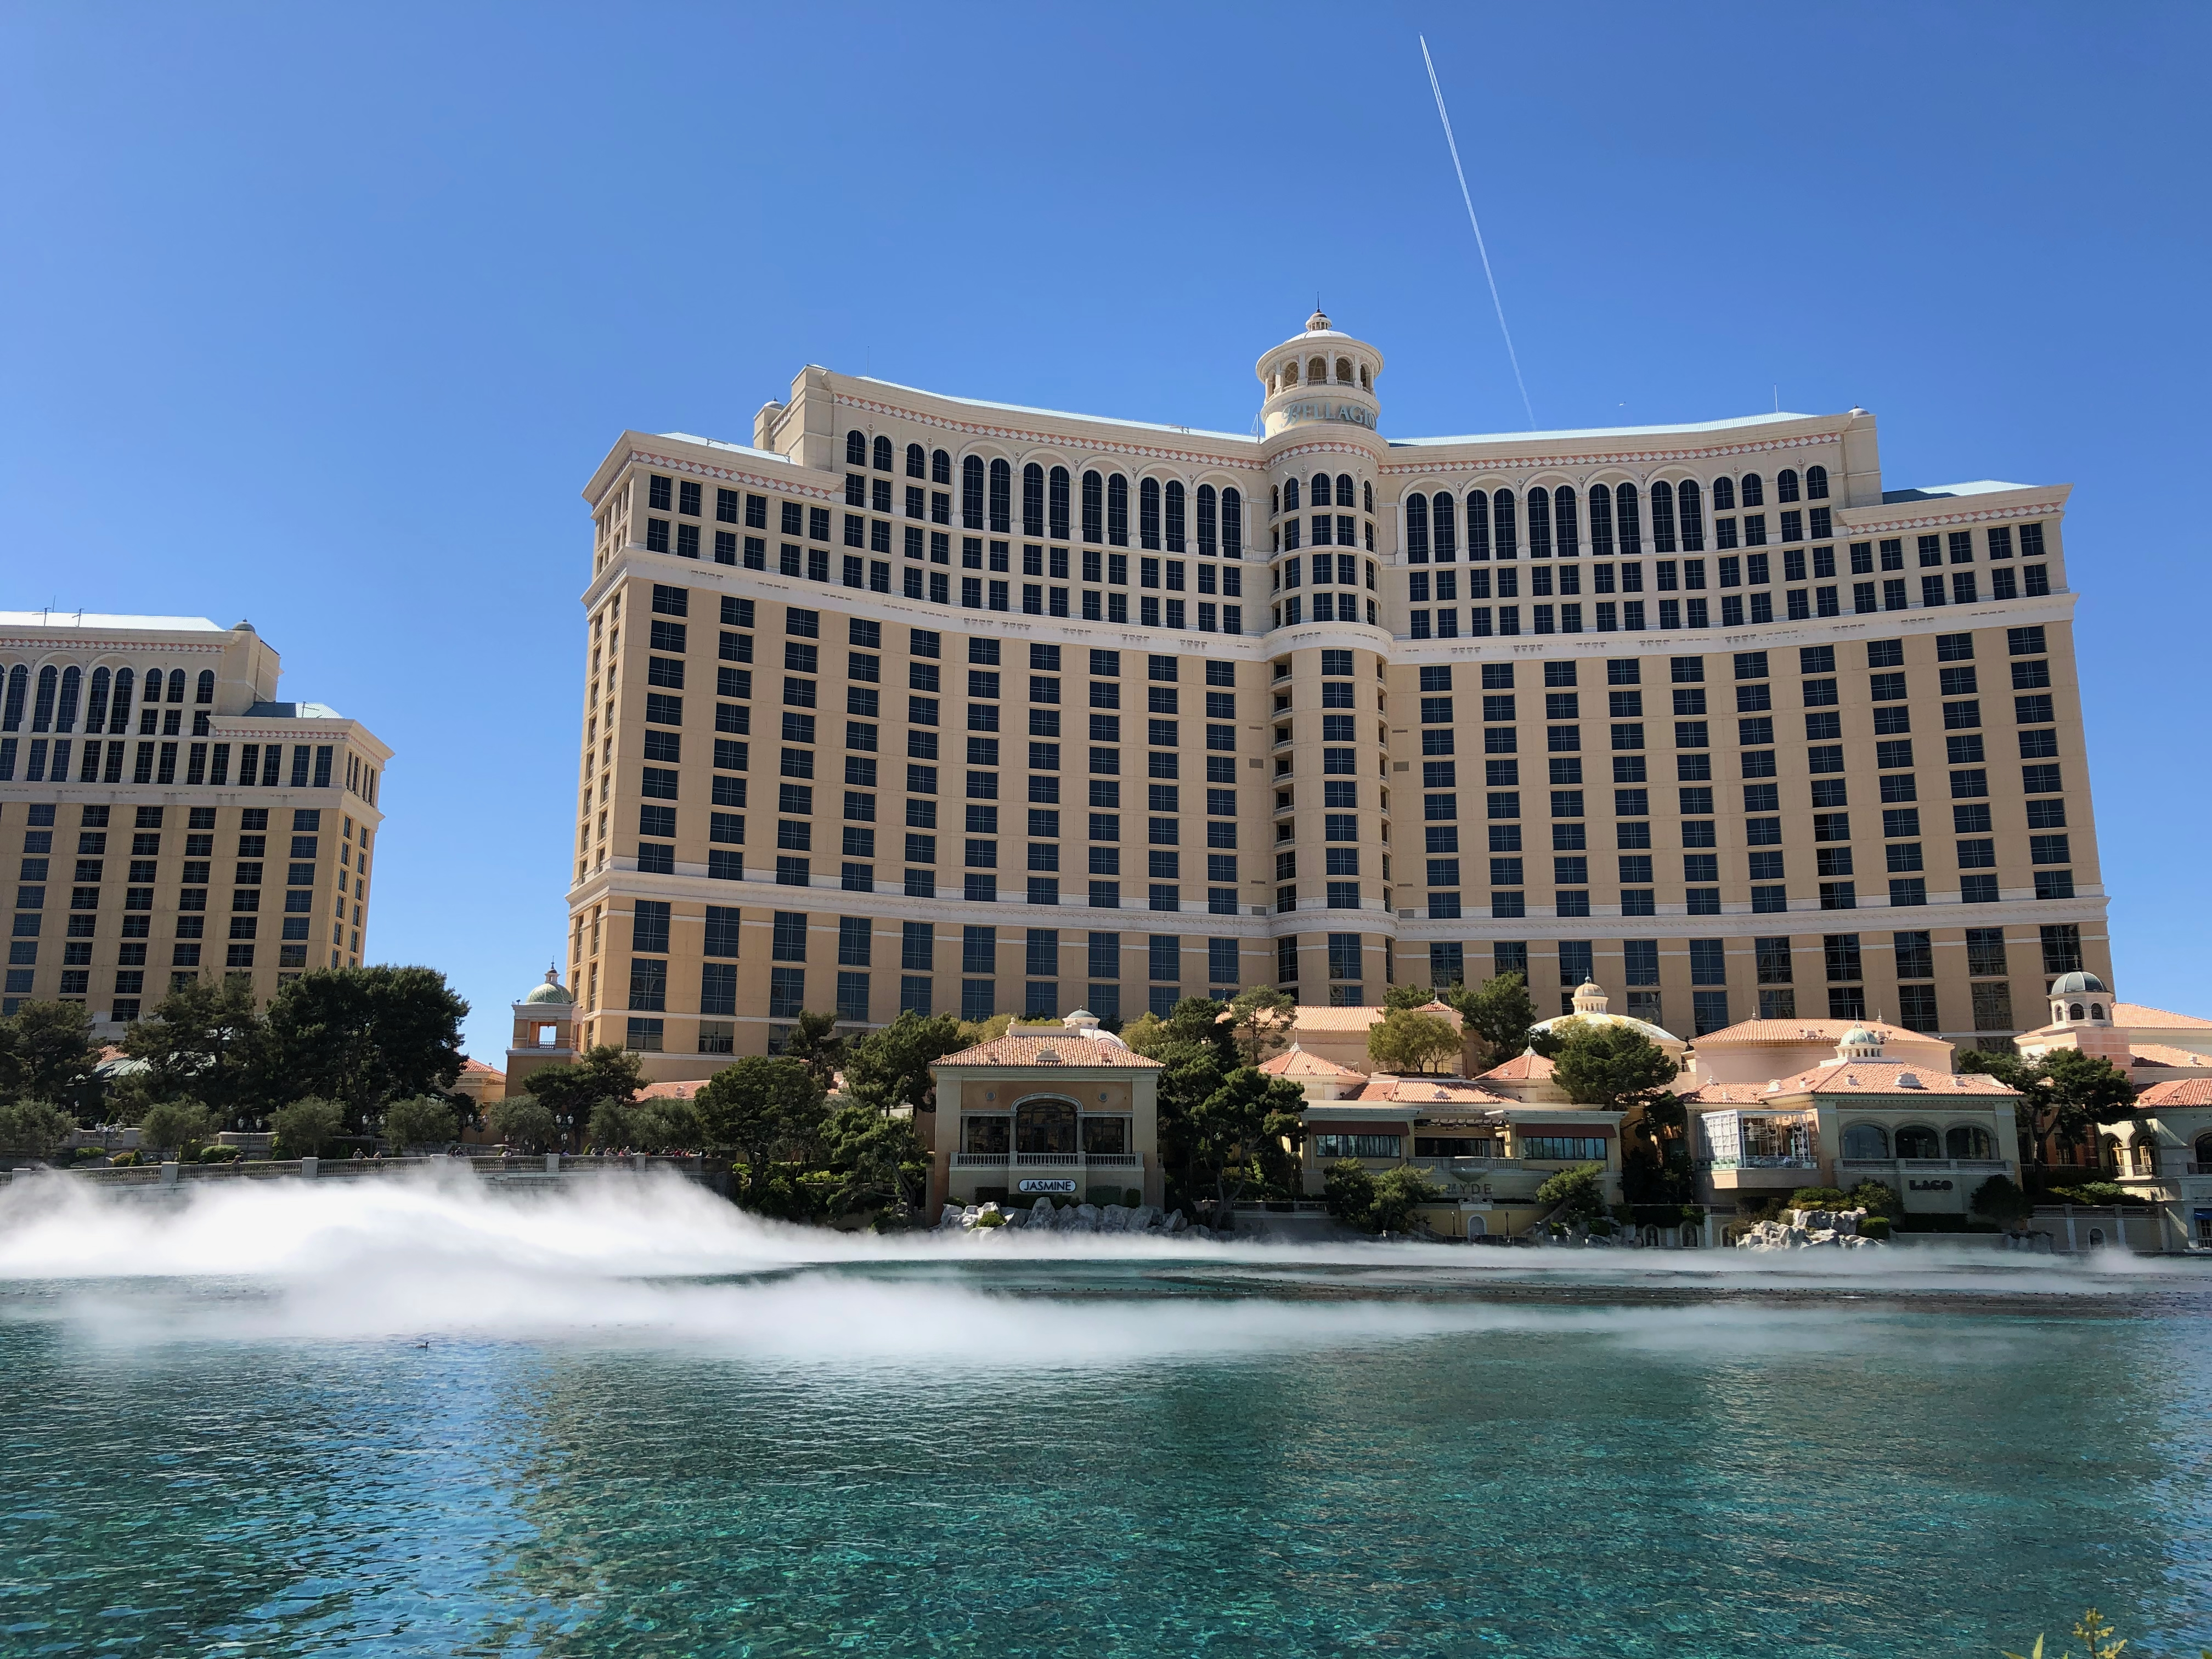 Blick auf das Bellagio Hotel in Las Vegas